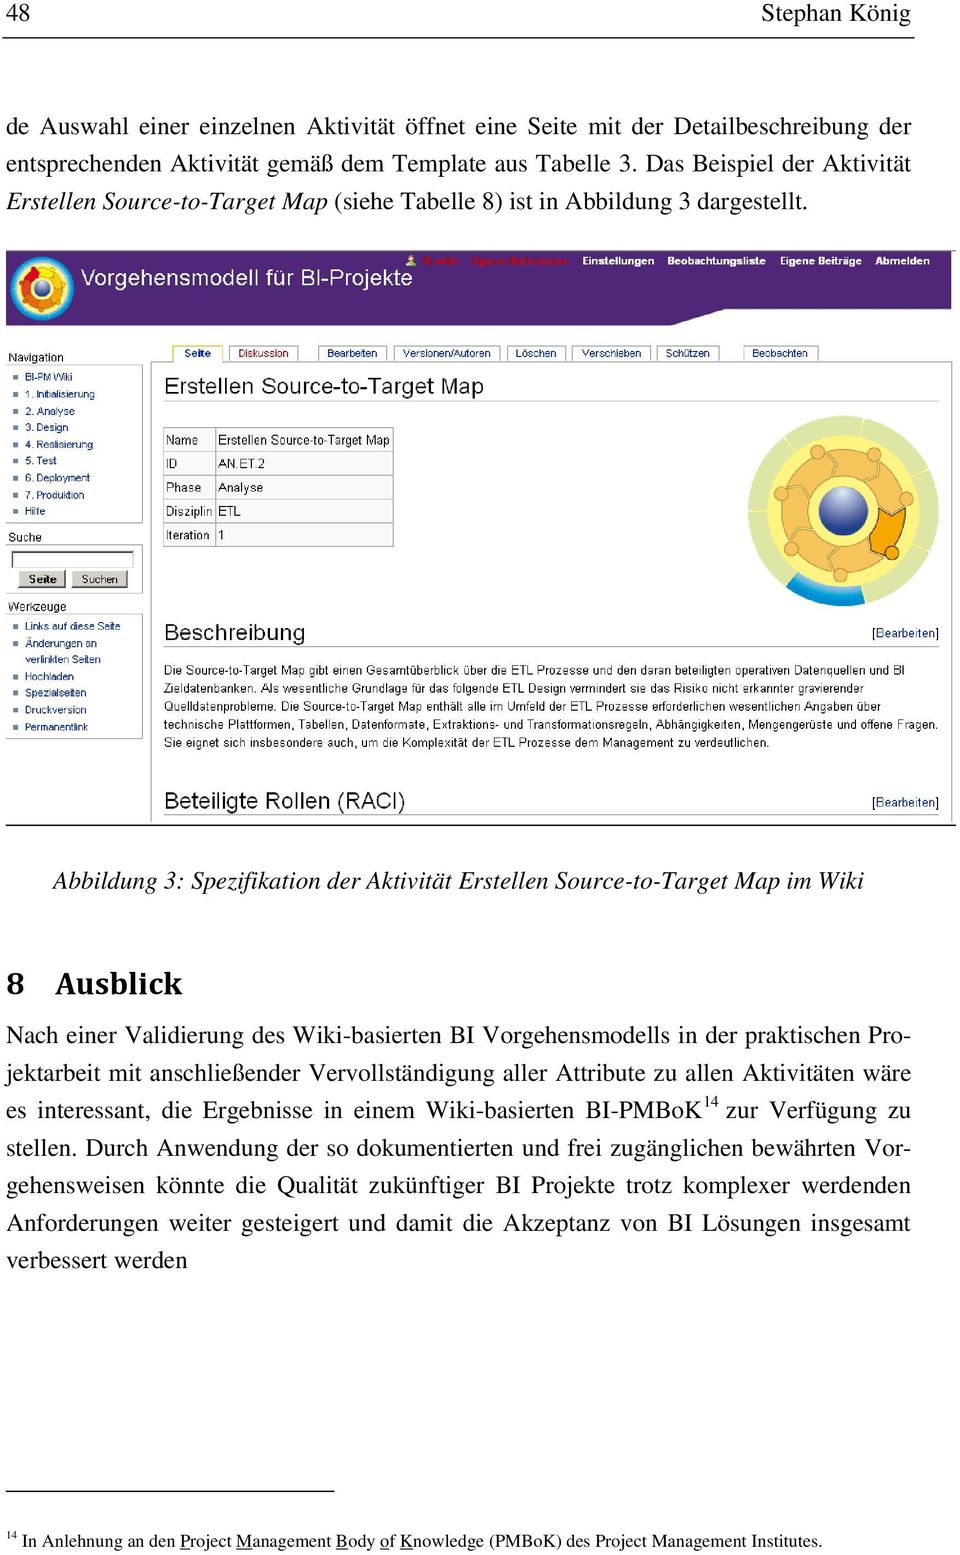 Abbildung 3: Spezifikation der Aktivität Erstellen Source-to-Target Map im Wiki 8 Ausblick Nach einer Validierung des Wiki-basierten BI Vorgehensmodells in der praktischen Projektarbeit mit